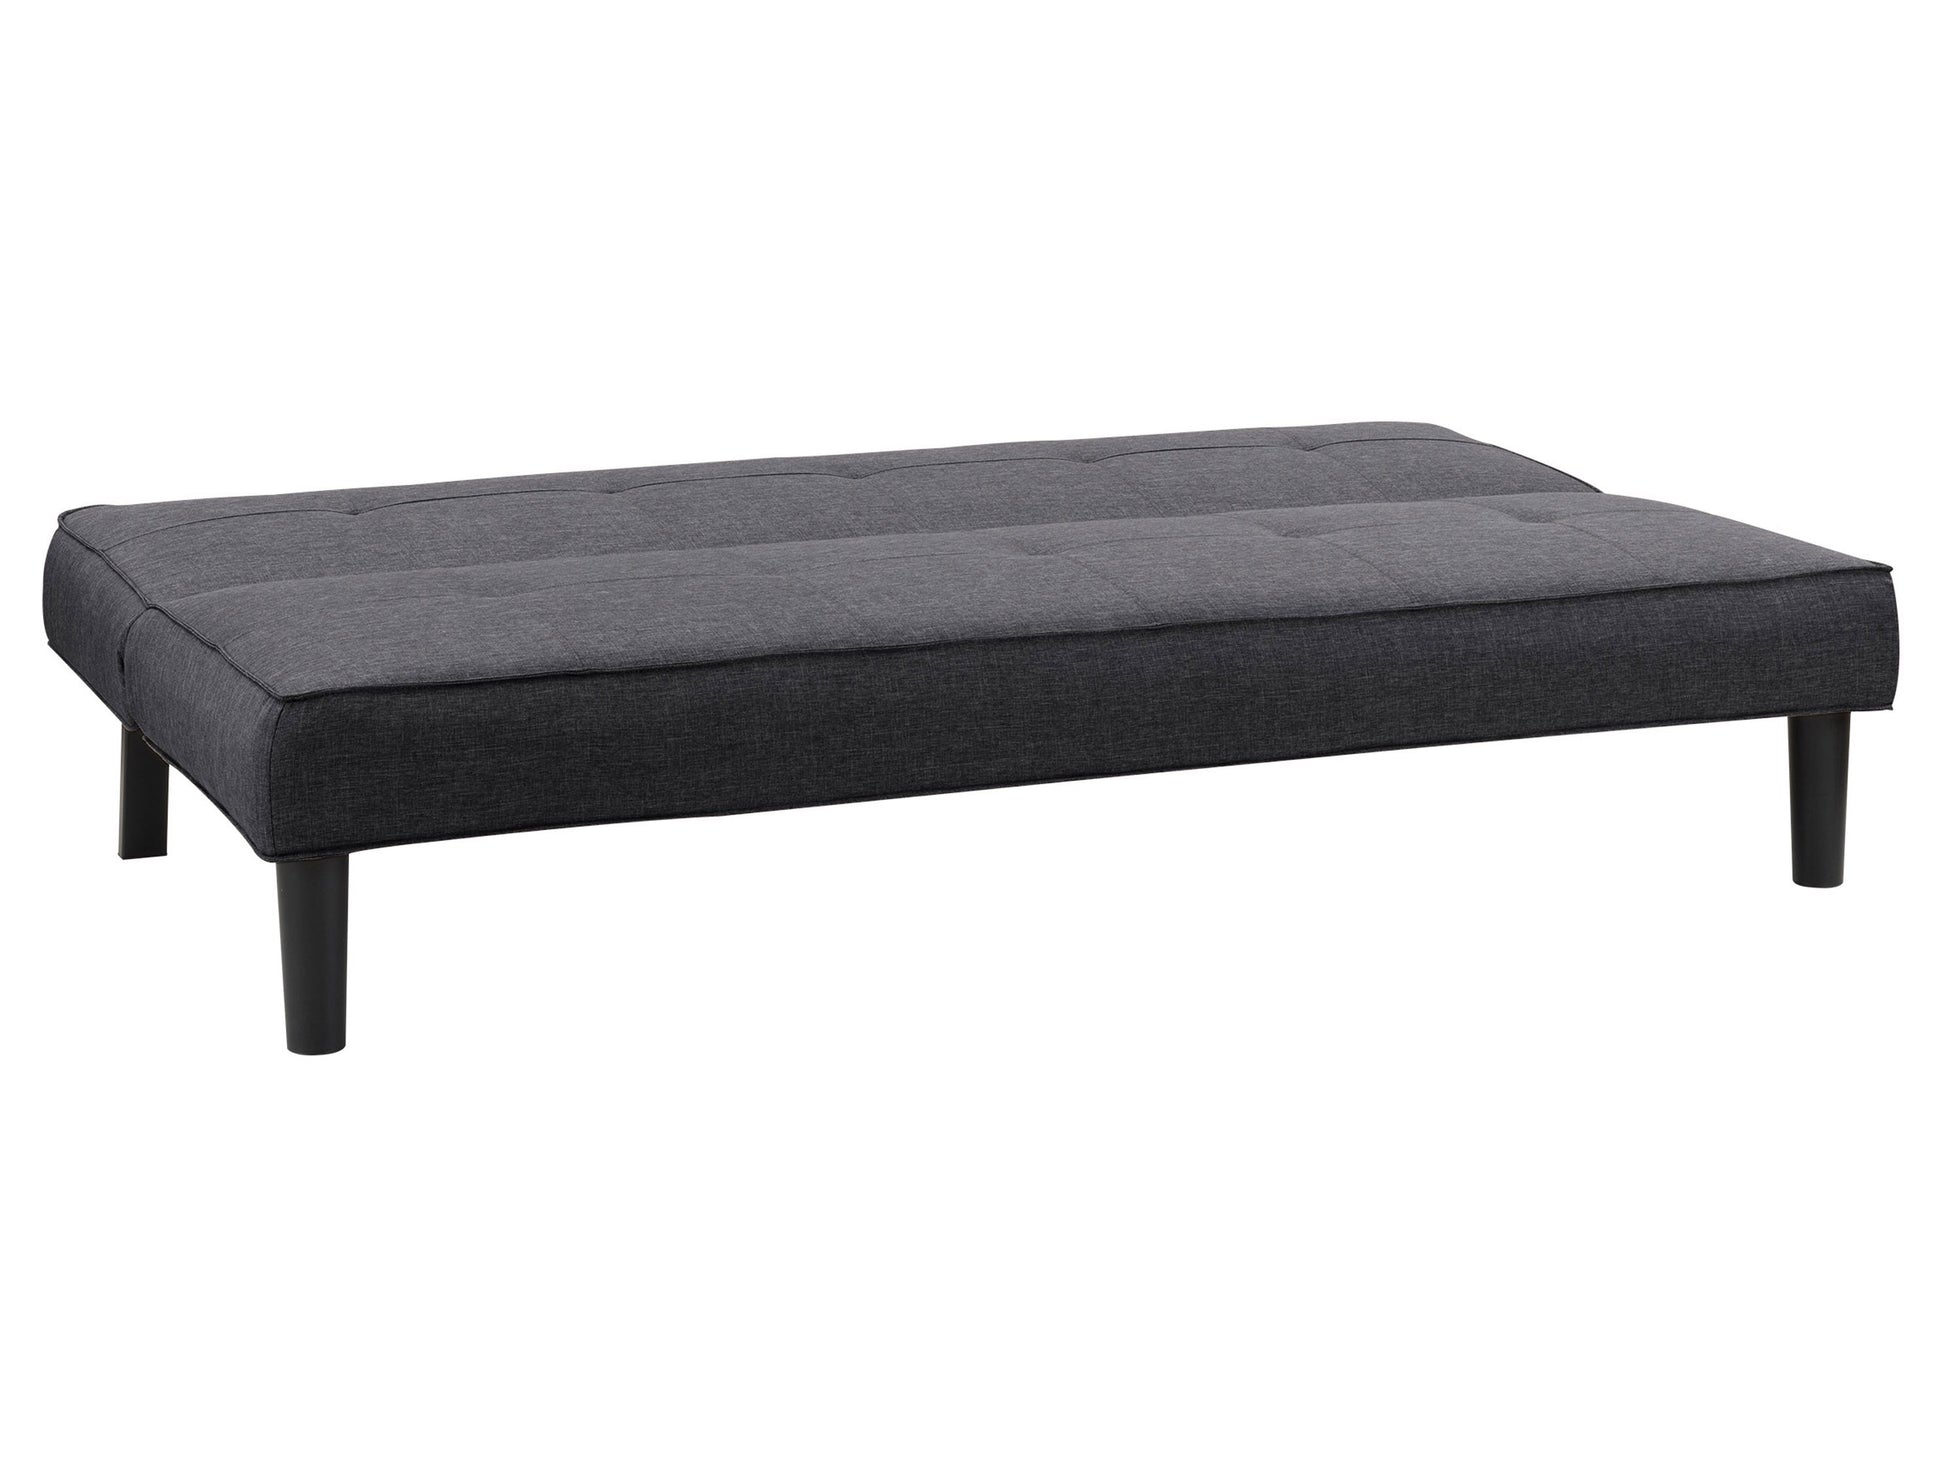 dark grey Convertible Futon Sofa Bed Yorkton collection product image by CorLiving#color_dark-grey